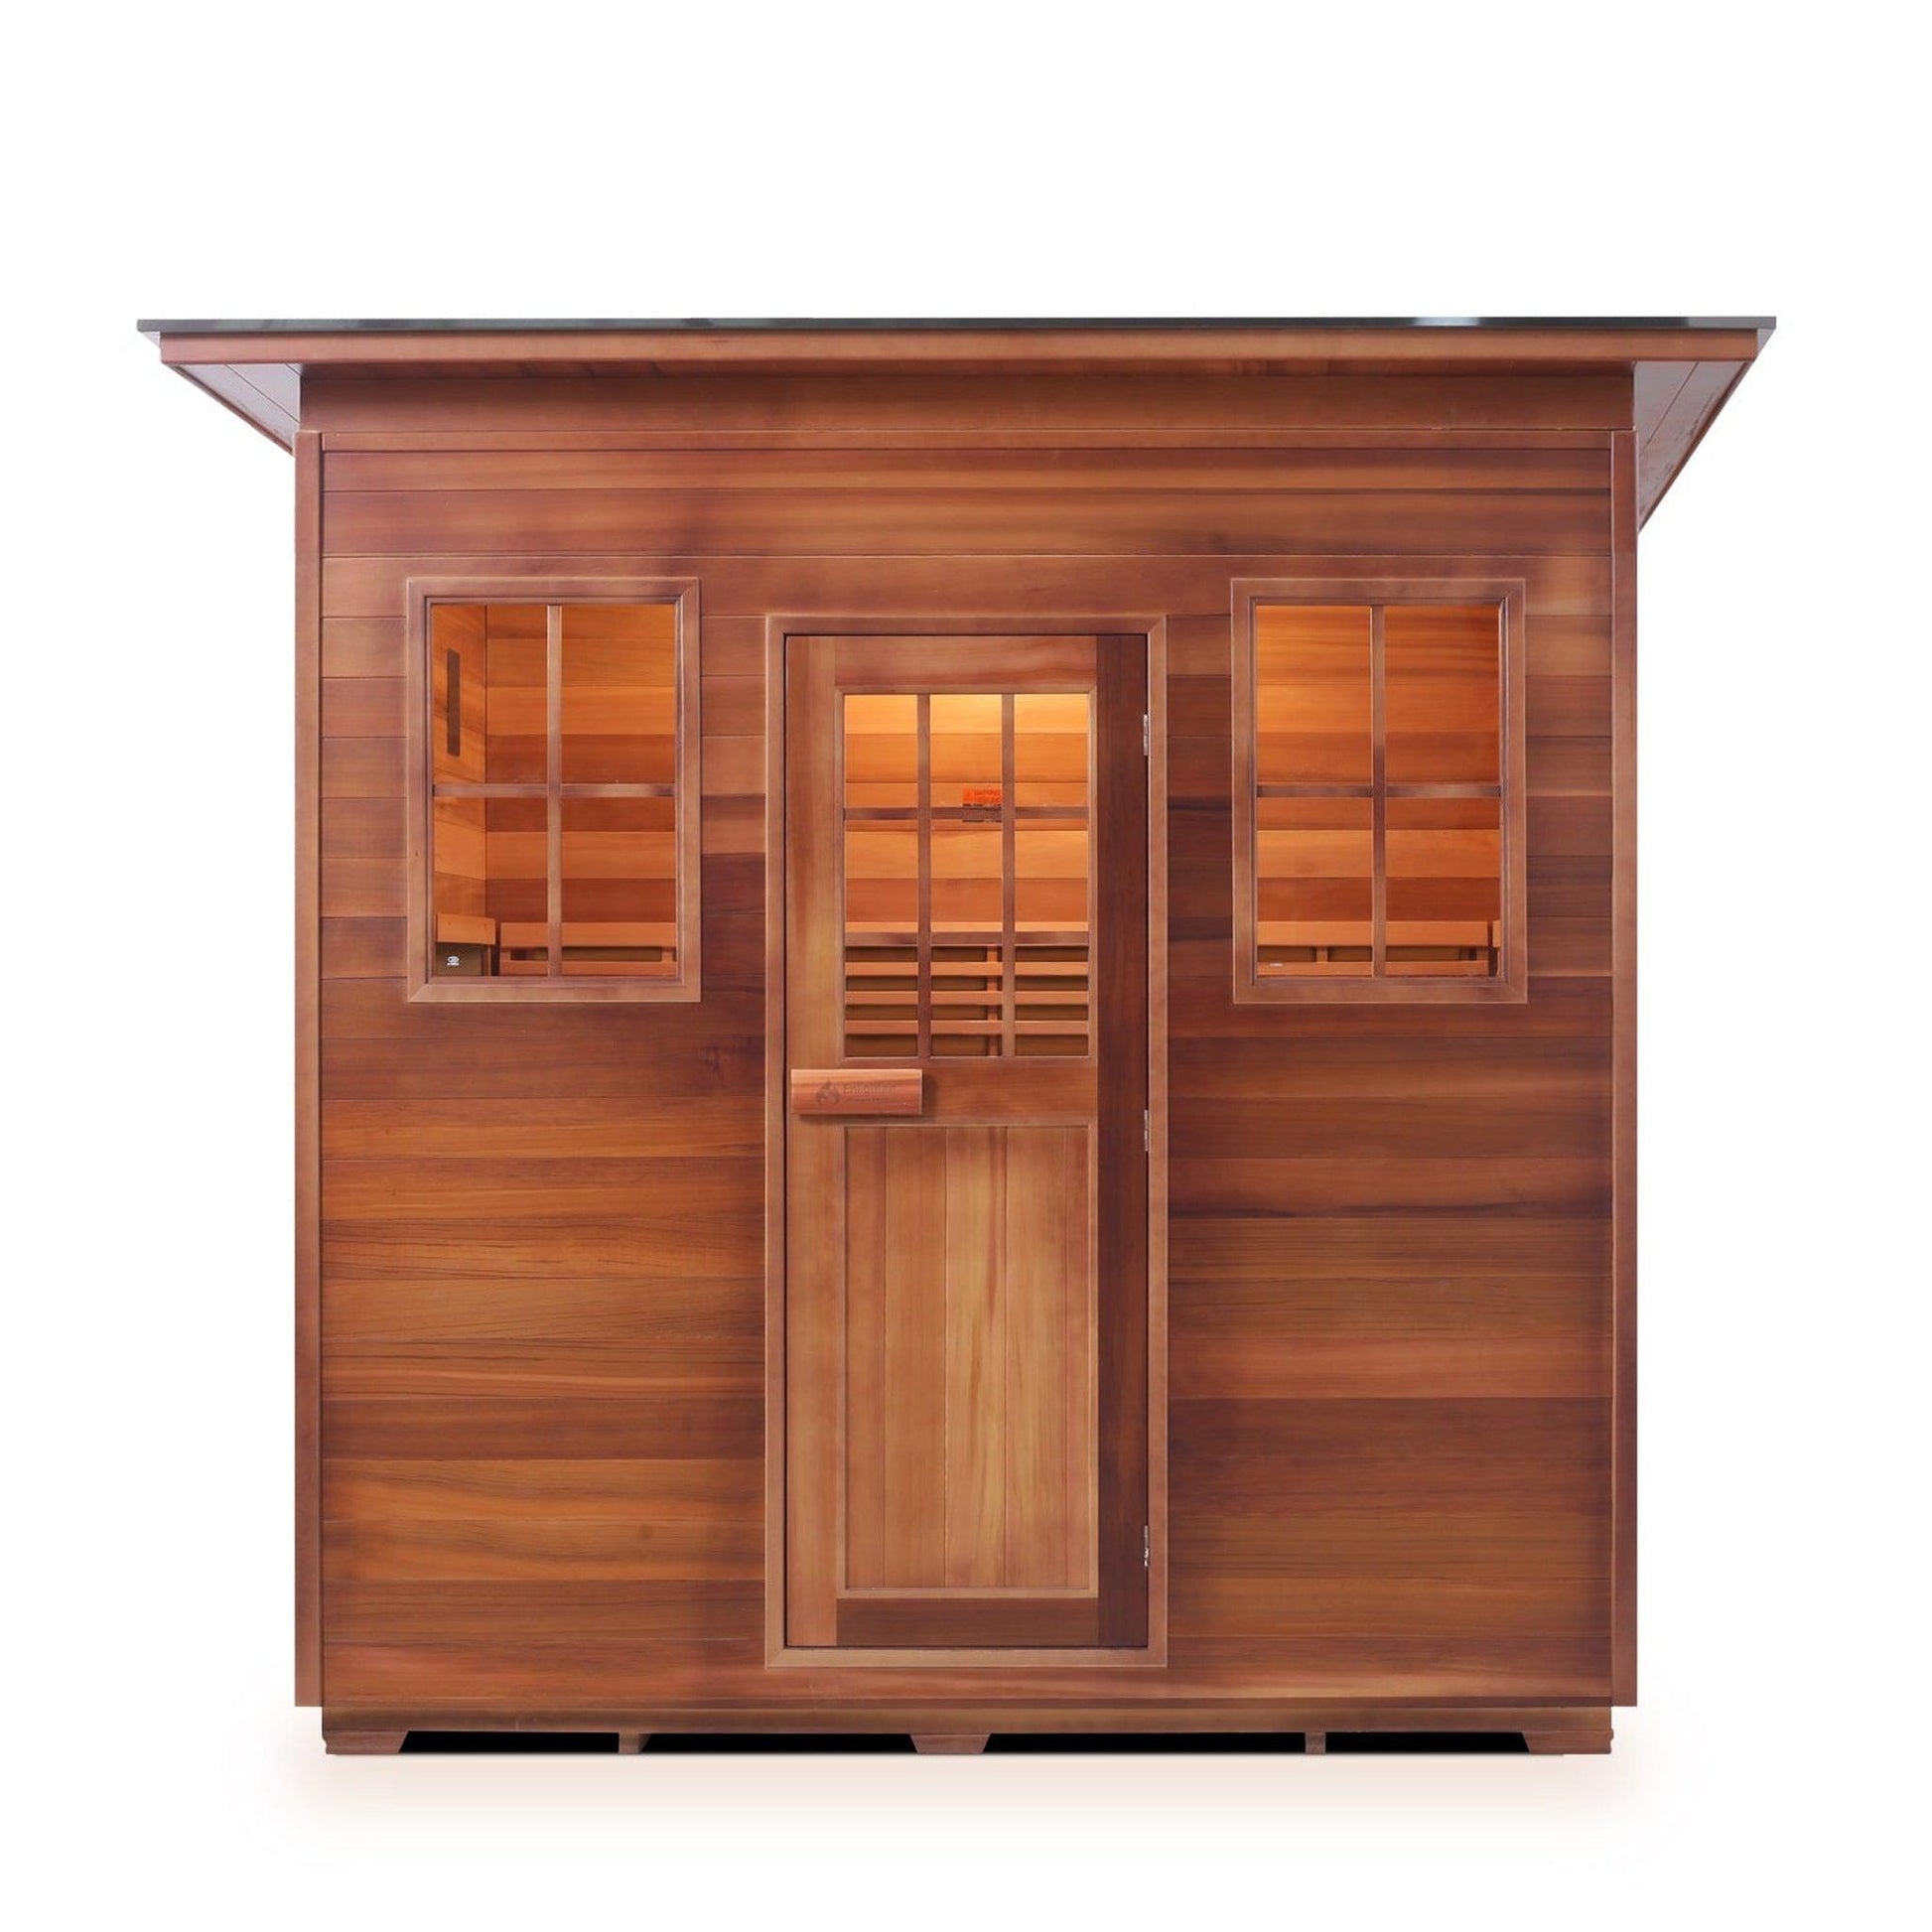 Enlighten SaunaTerra MoonLight 5-Person Slope Roof Dry Traditional Outdoor Sauna